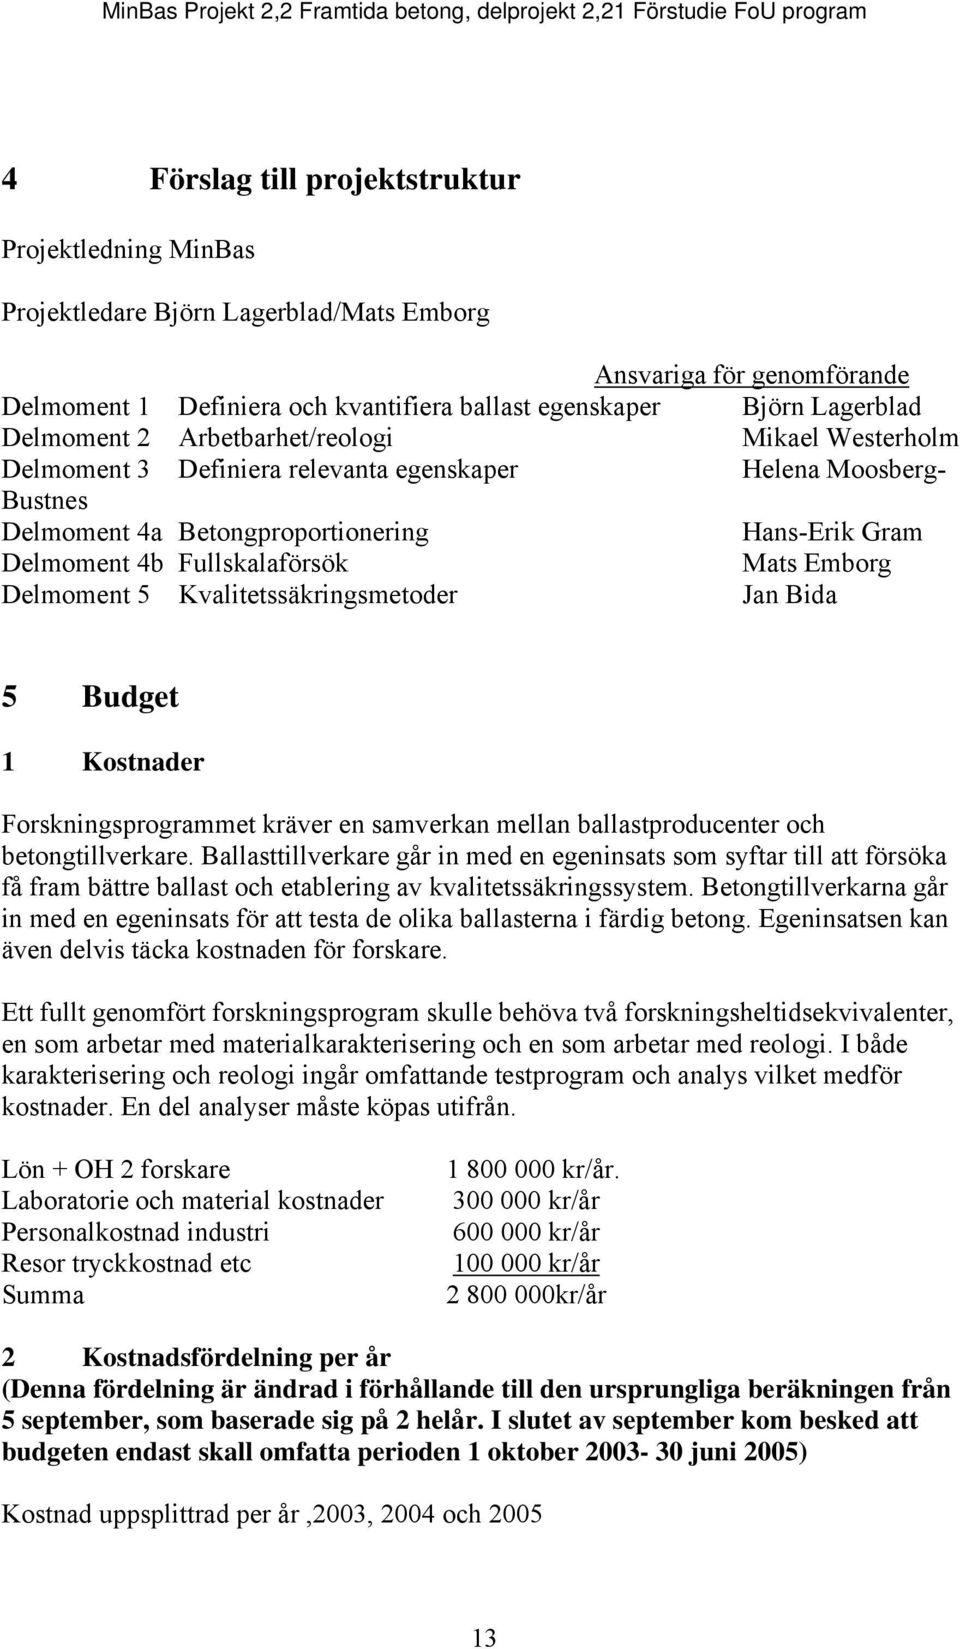 Mats Emborg Delmoment 5 Kvalitetssäkringsmetoder Jan Bida 5 Budget 1 Kostnader Forskningsprogrammet kräver en samverkan mellan ballastproducenter och betongtillverkare.